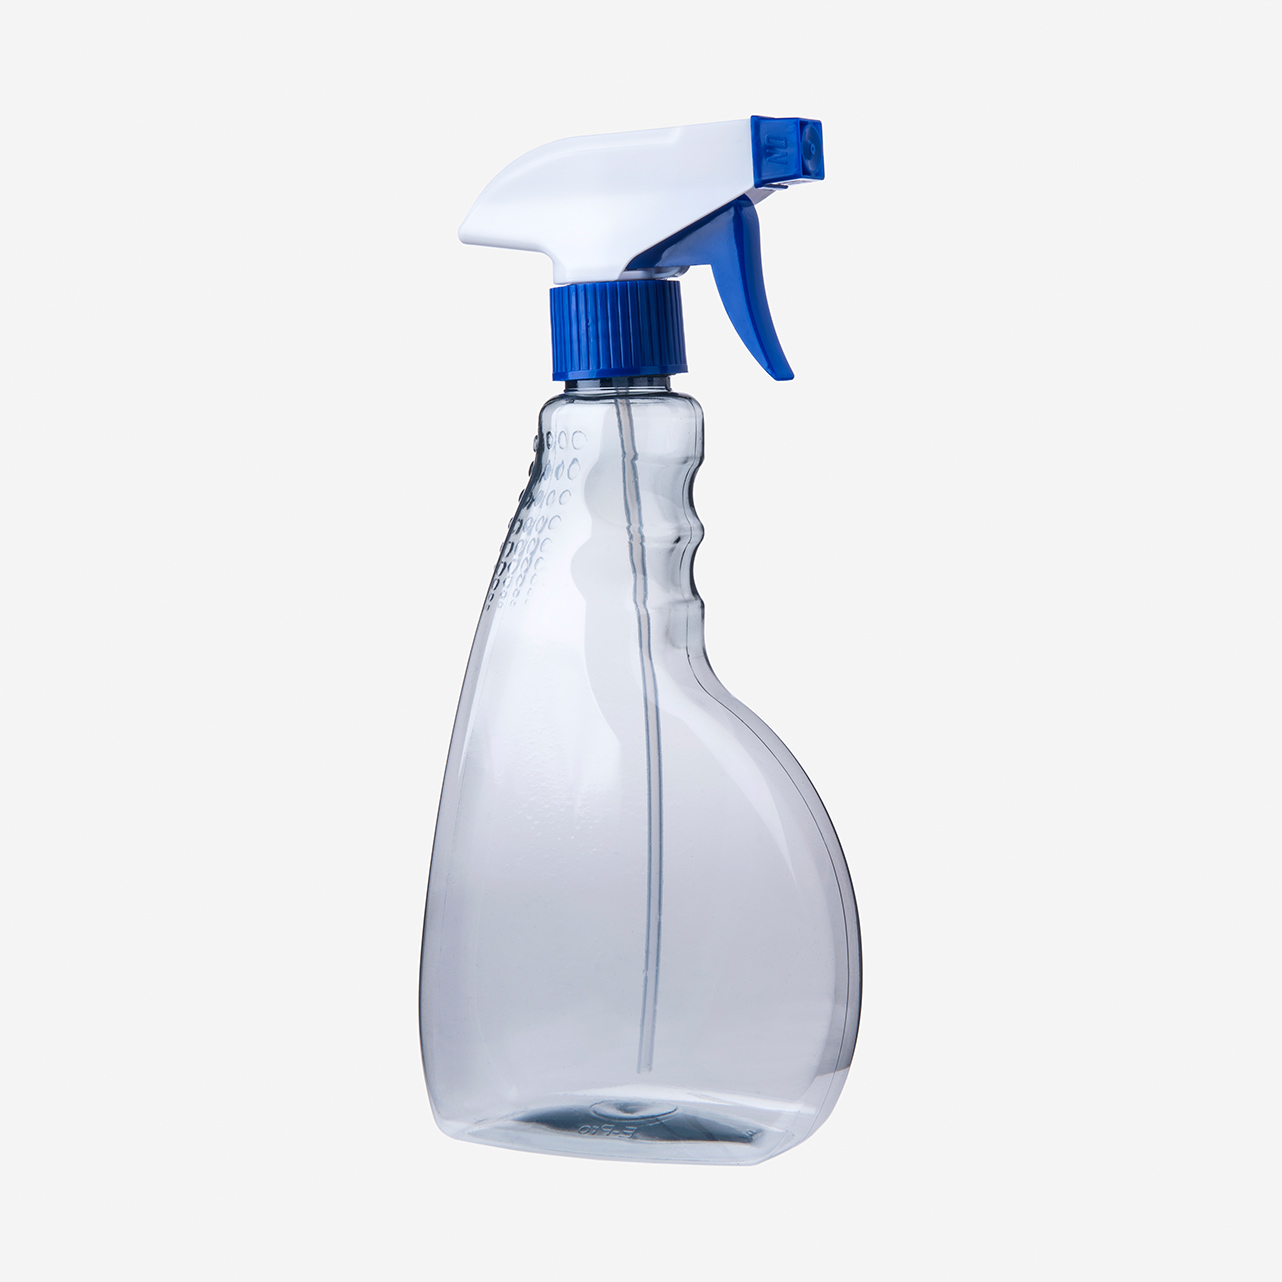 10er Set 500 ml Sprühflasche Recycling PET inkl. blau-weißer Sprühpistole